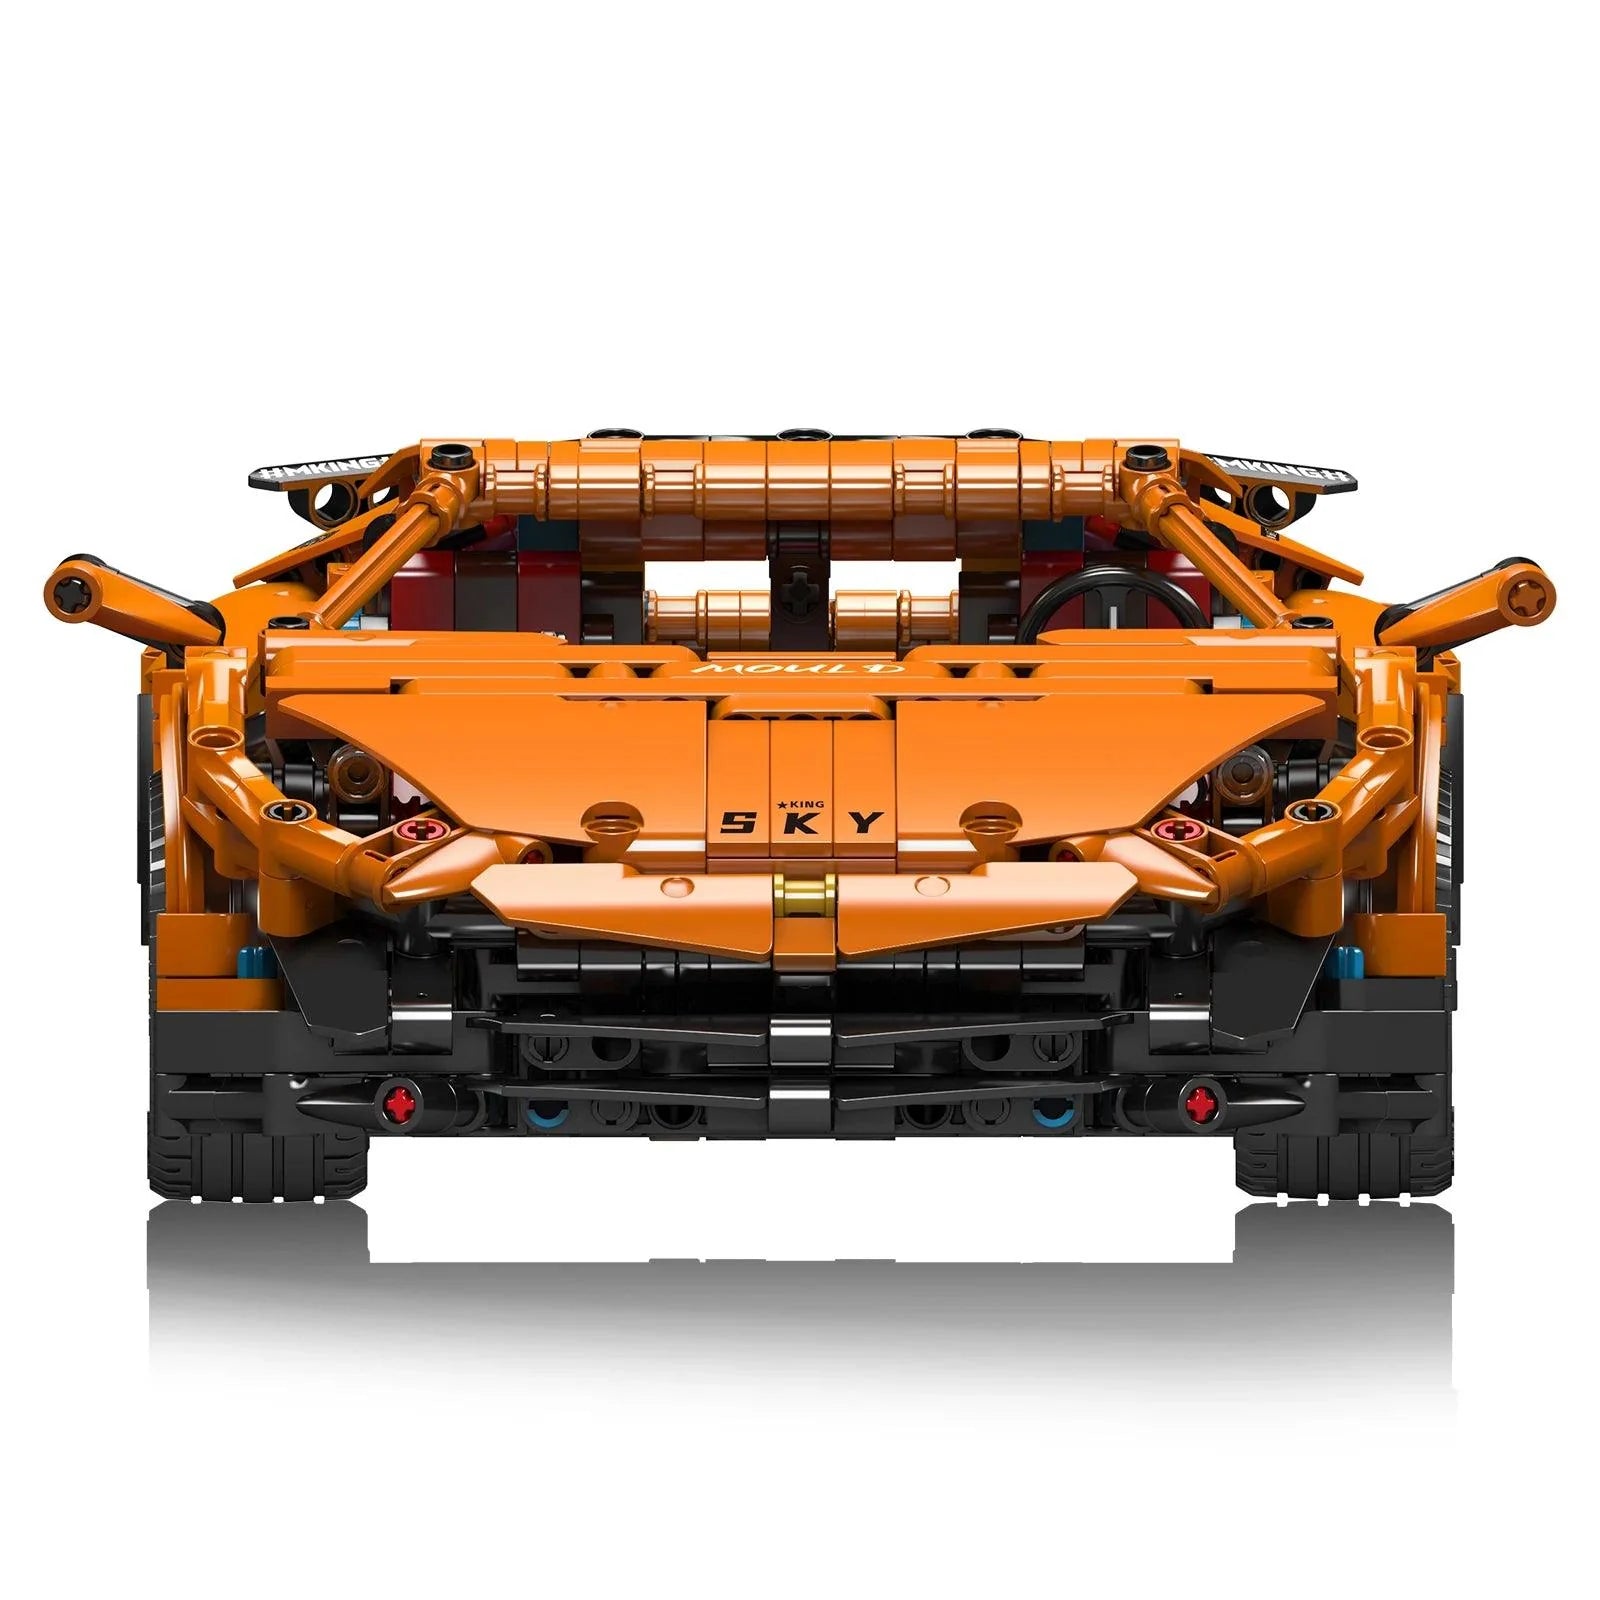 Lamborghini Aventador SVJ s set, compatible with Lego